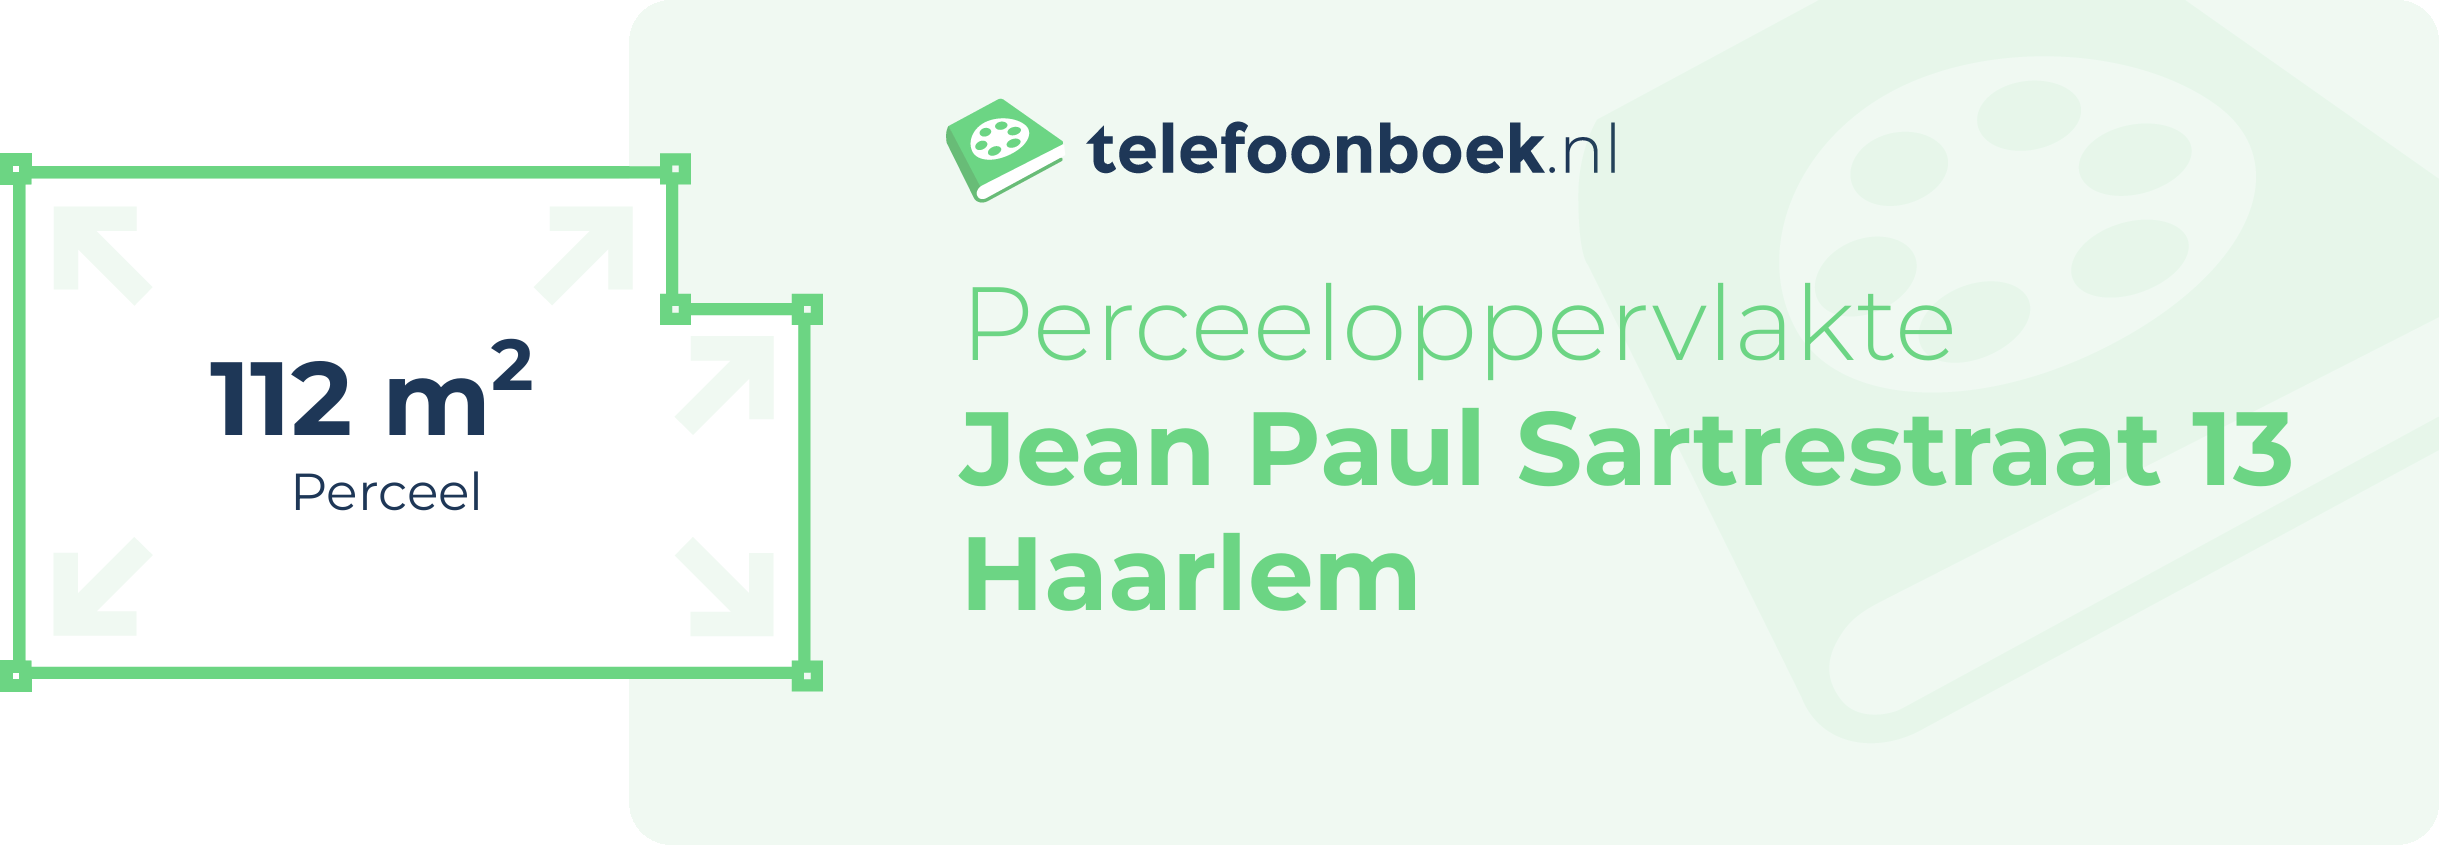 Perceeloppervlakte Jean Paul Sartrestraat 13 Haarlem